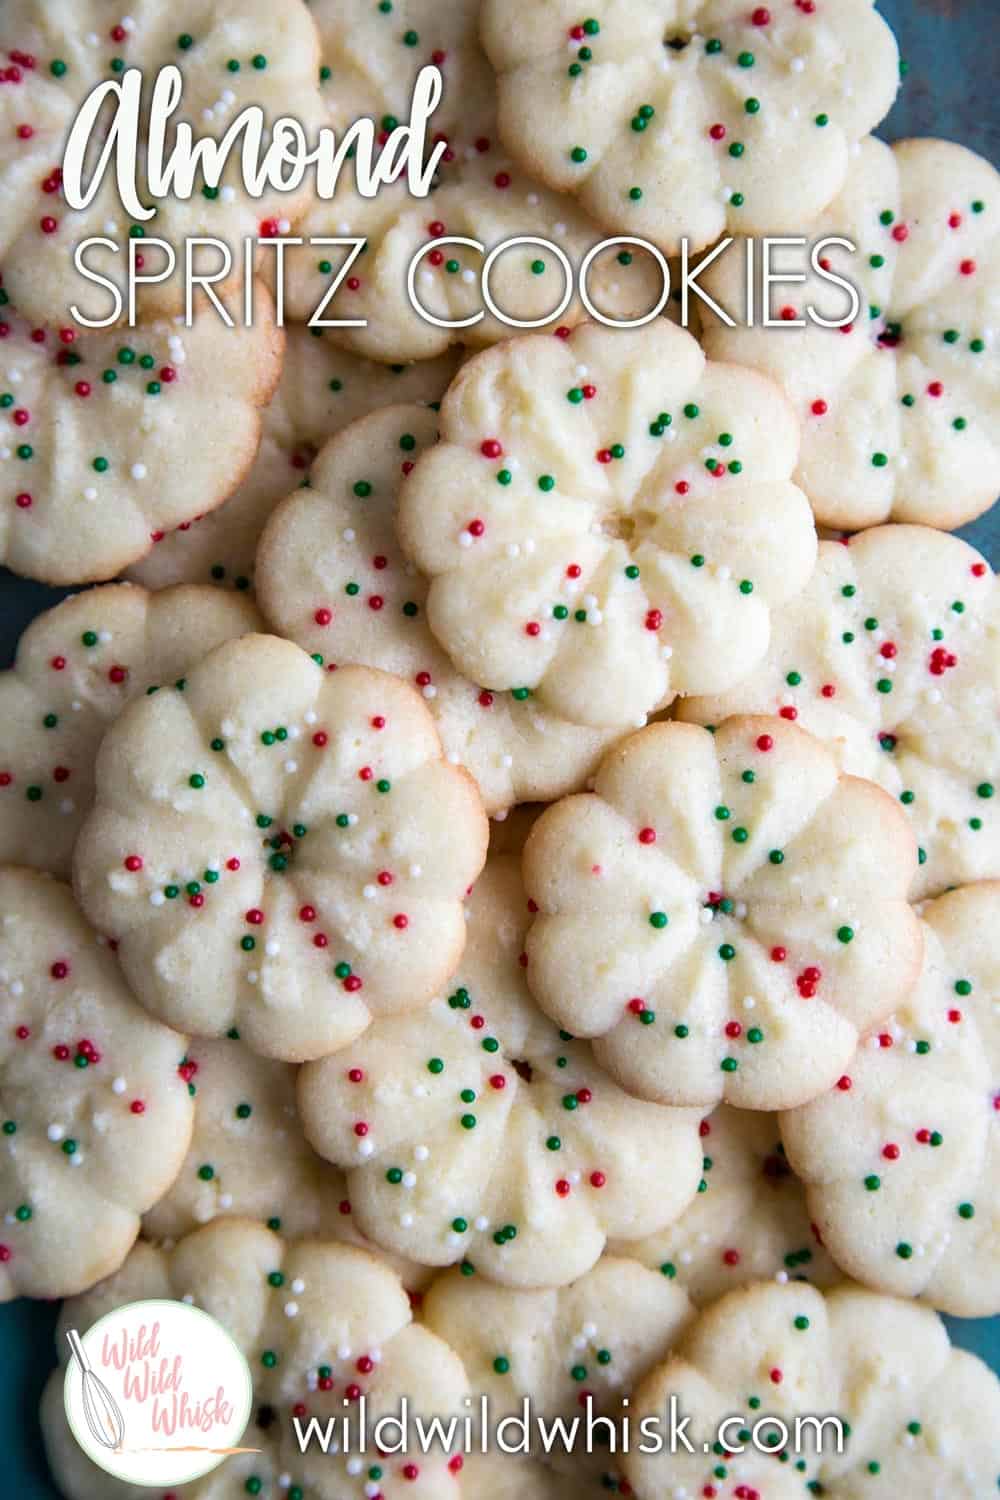  このアーモンドスプリッツクッキーレシピはとても簡単に作ることができます。 このクッキーは、ホリデーのための任意のお祝いの形状にパイピングすることができます。 #wildwildwhisk #spritzcookies #spritzcookierecipe #almondspritz #christmascookies #christmascookieexchange #christmascookierecipe #almondcookies #almond #cookiepress